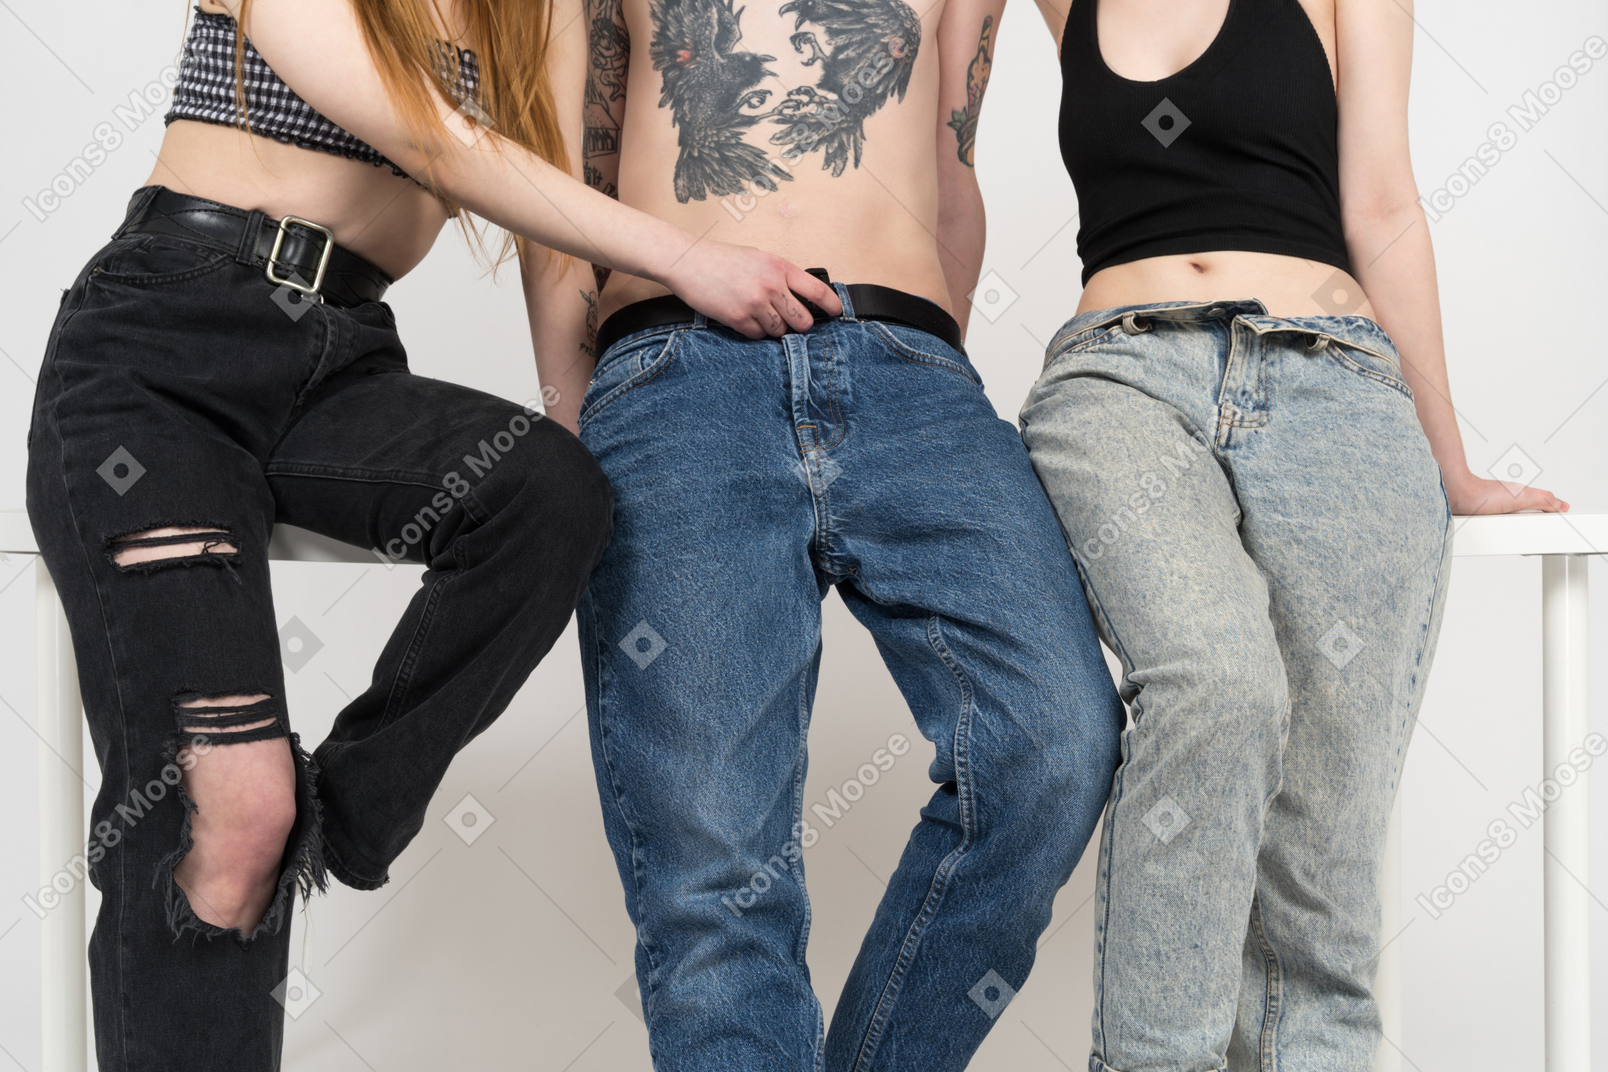 Одна из девушек расстегивает ширинку на подростковых джинсах